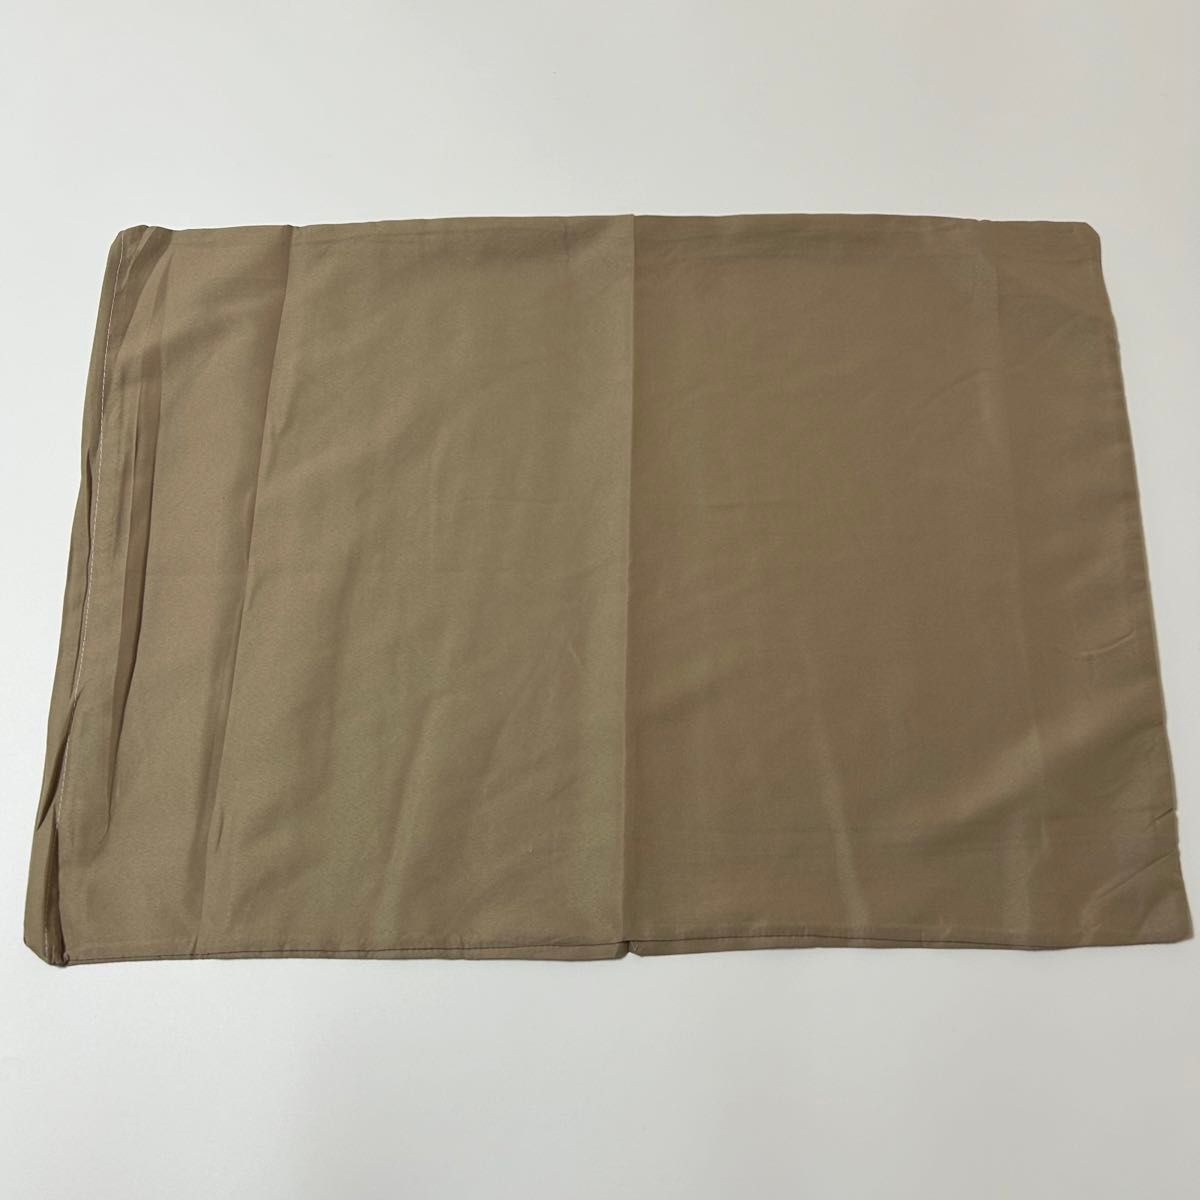 新品未使用 枕カバー オリーブ ピロケース 43×63